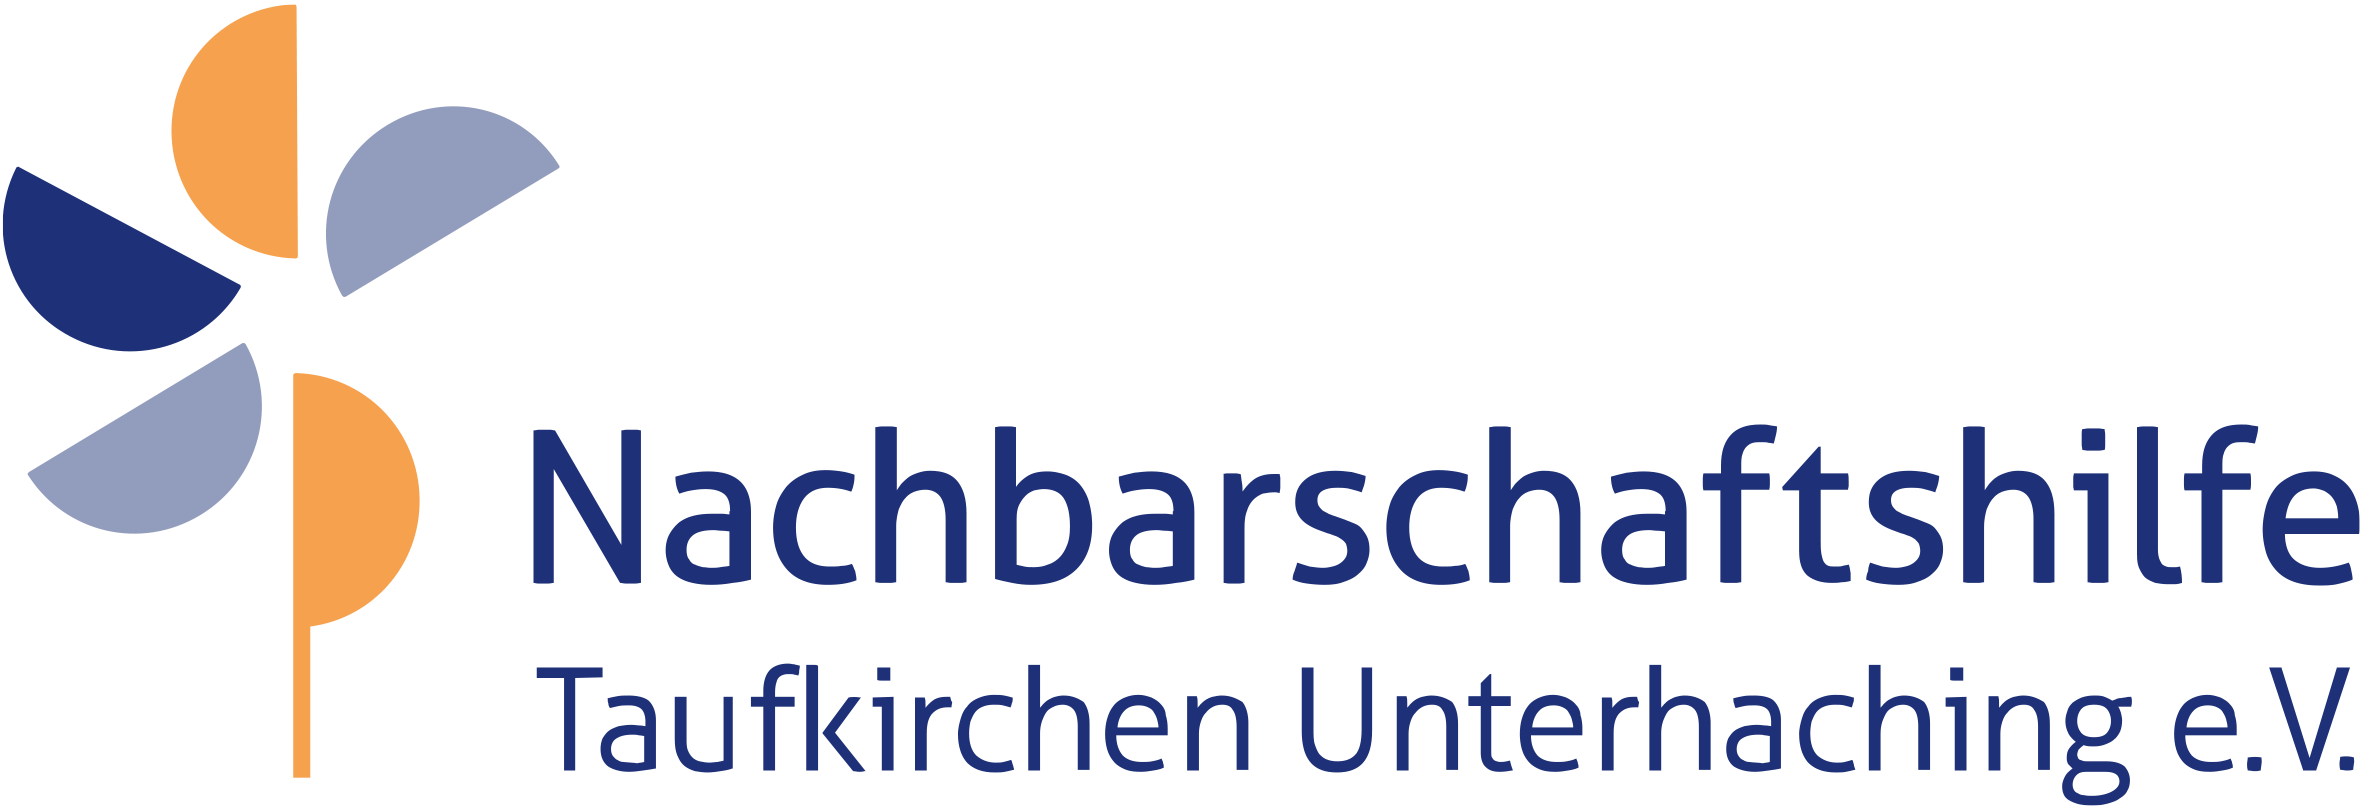 Nachbarschaftshilfe Taufkirchen Unterhaching - Coaching für Jugendliche